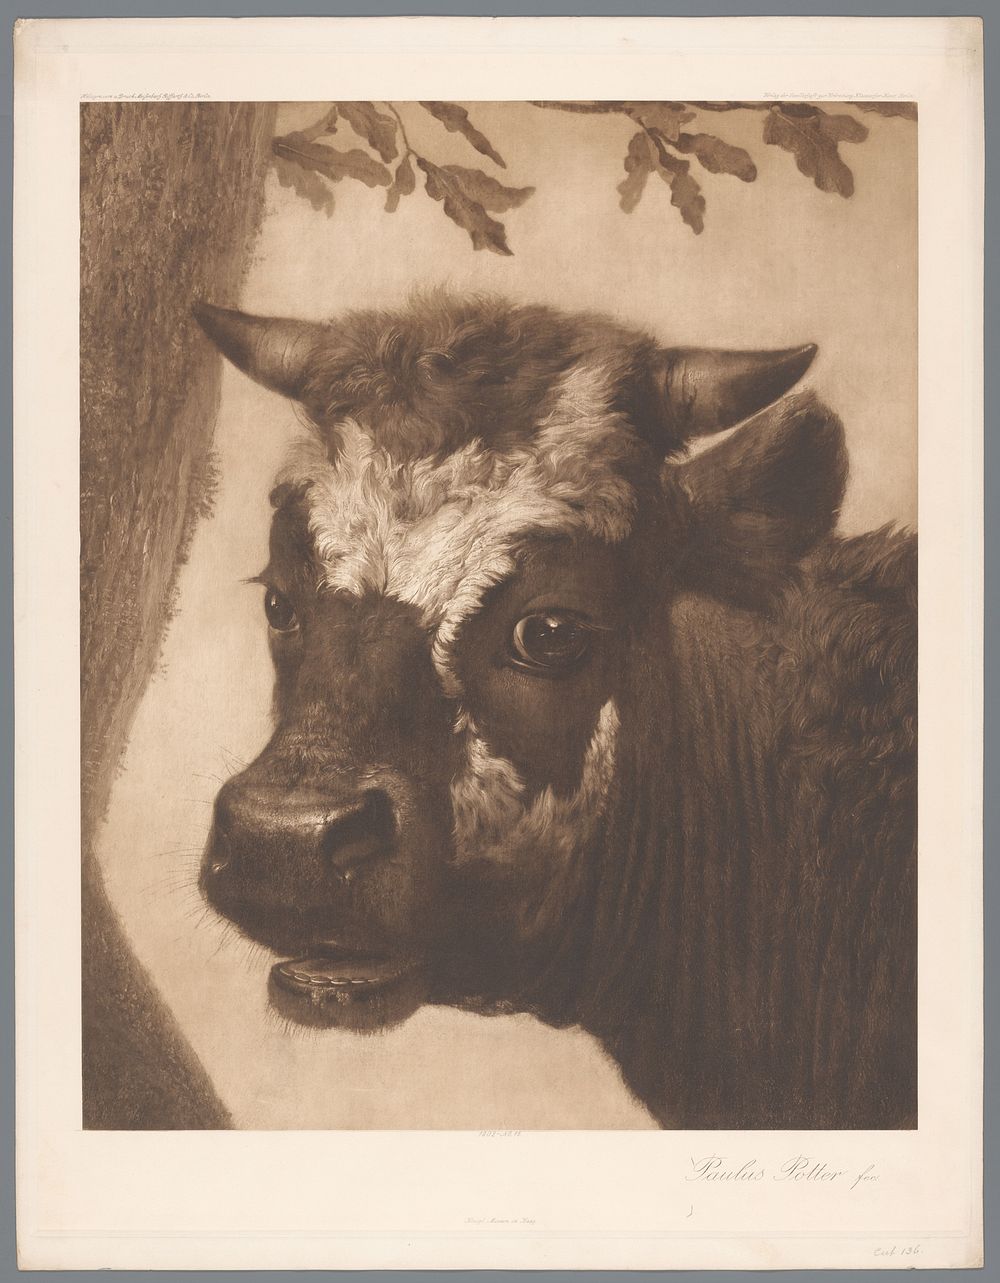 Fotoreproductie van detail van schilderij De stier door Paulus Potter, coll. Mauritshuis (1902) by anonymous, Riffarth and…